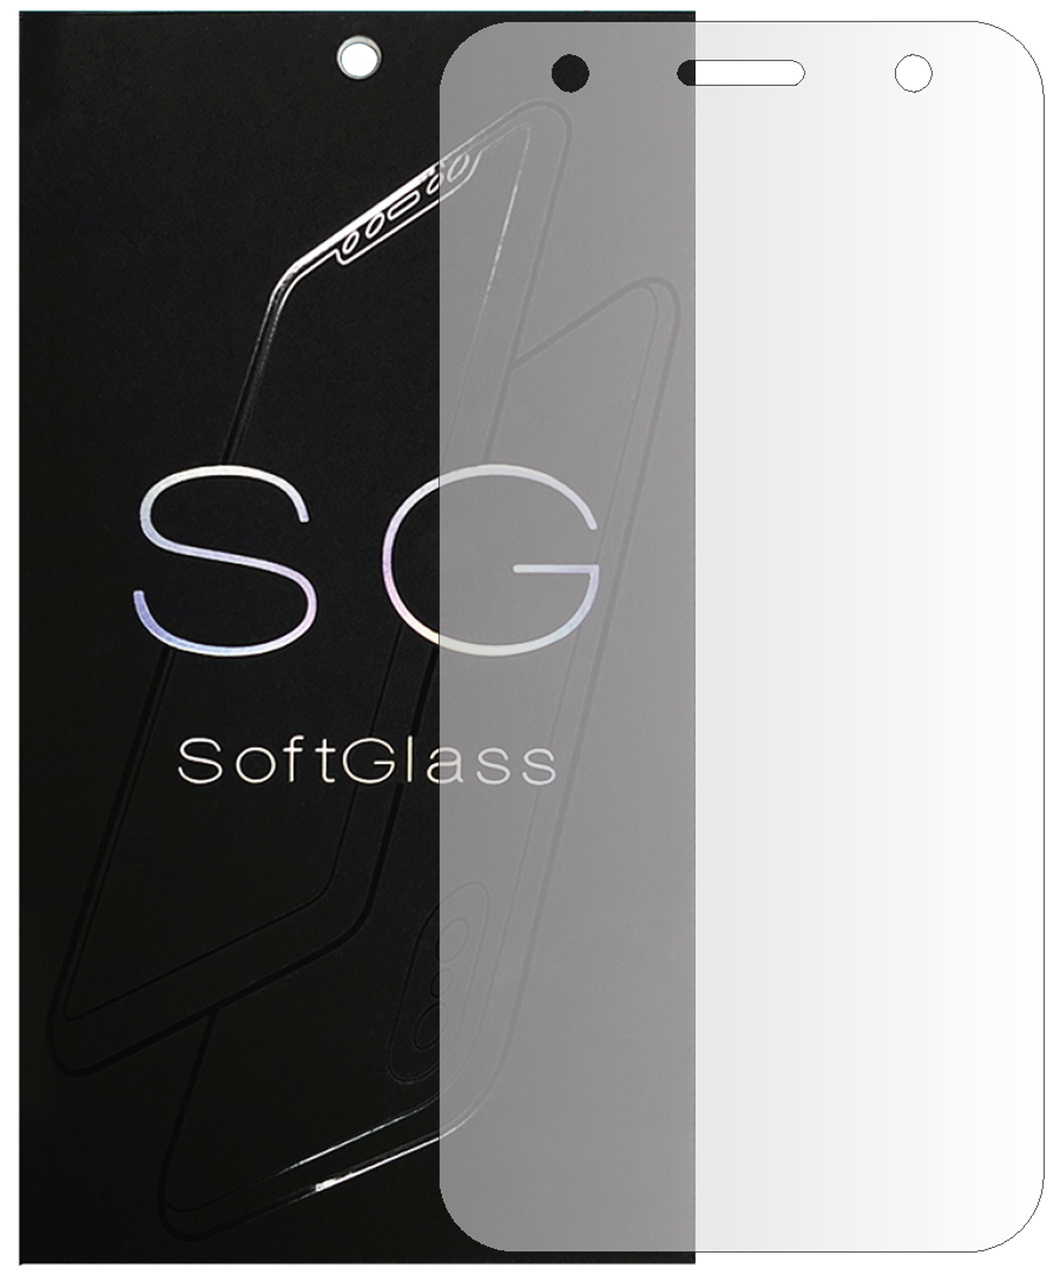 Бронеплівка LG xpower 2 на екран поліуретанова SoftGlass